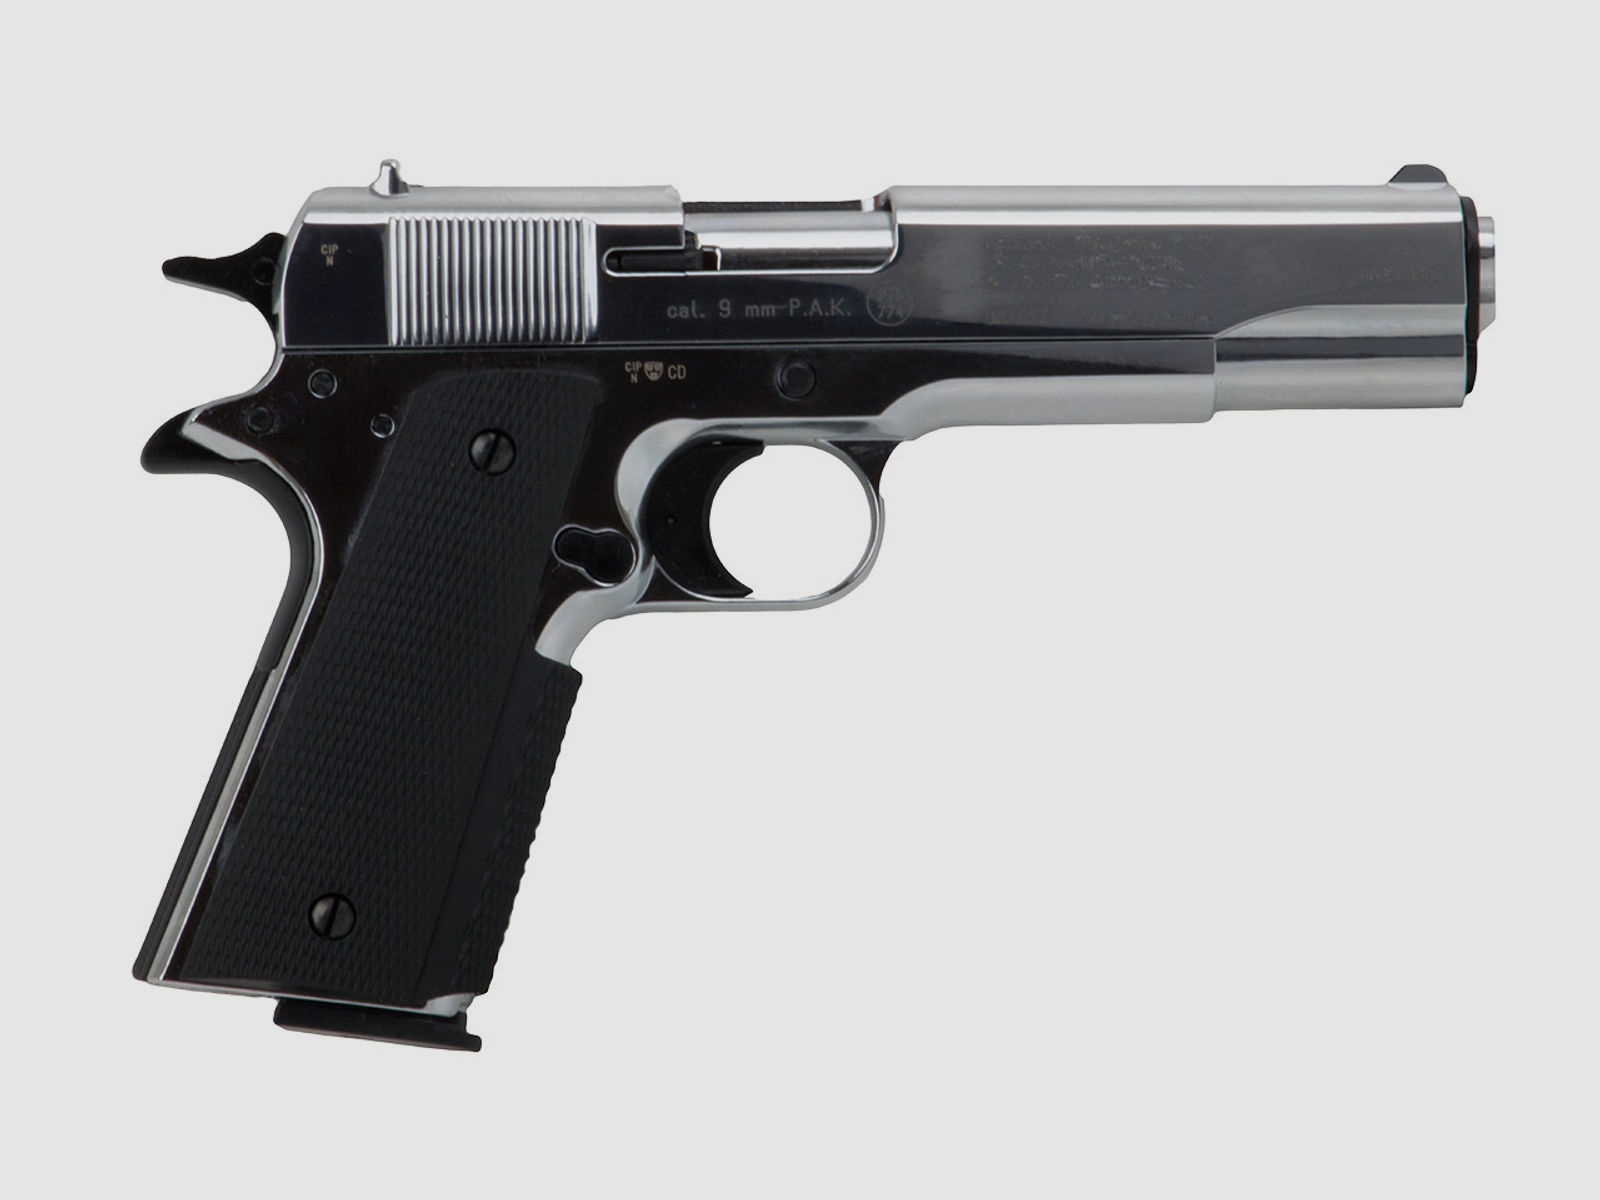 Schreckschuss Pistole Colt Government 1911 A1 chrom poliert Kaliber 9 mm P.A.K. (P18)